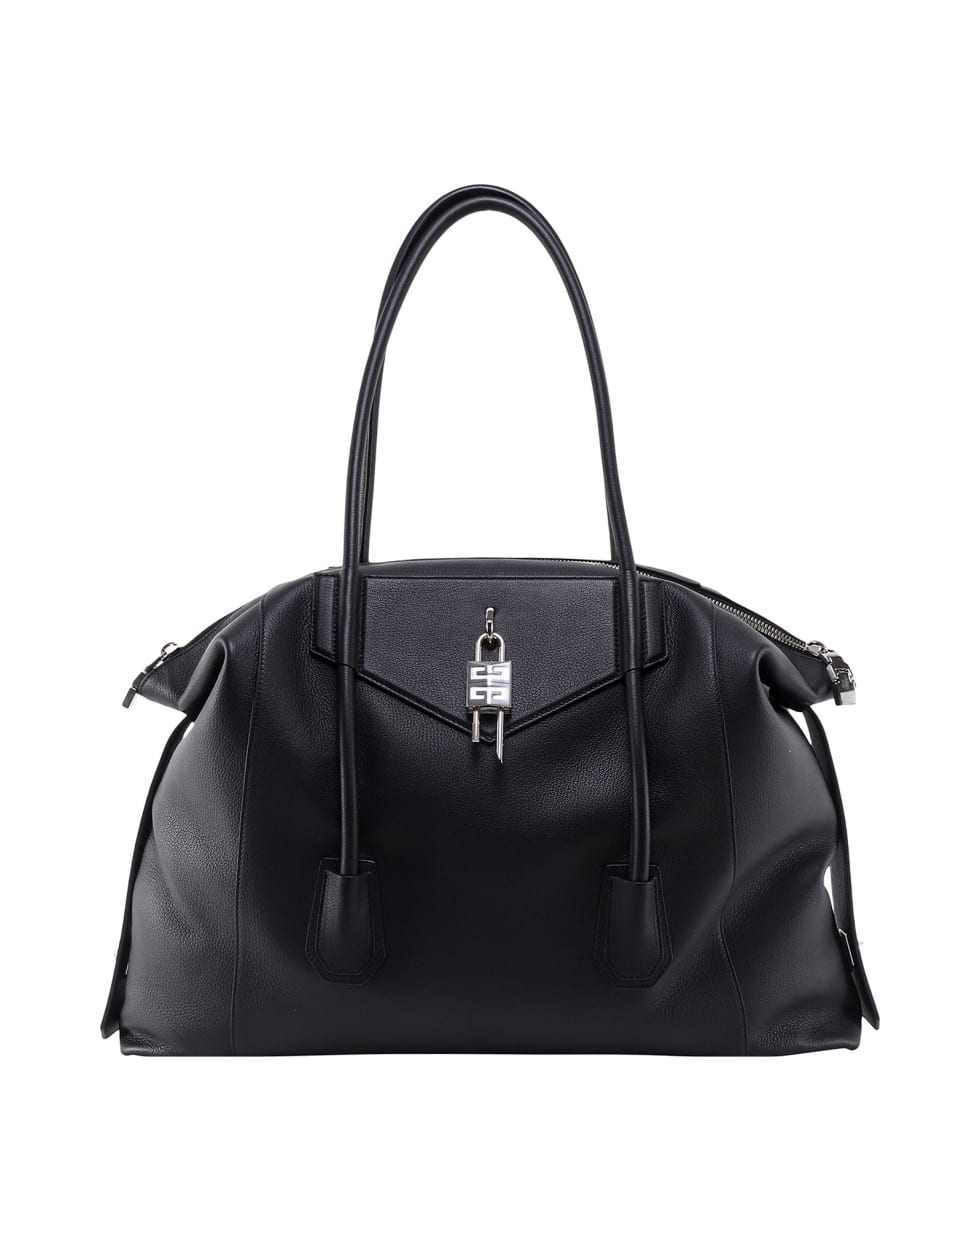 Givenchy Handbag - Black